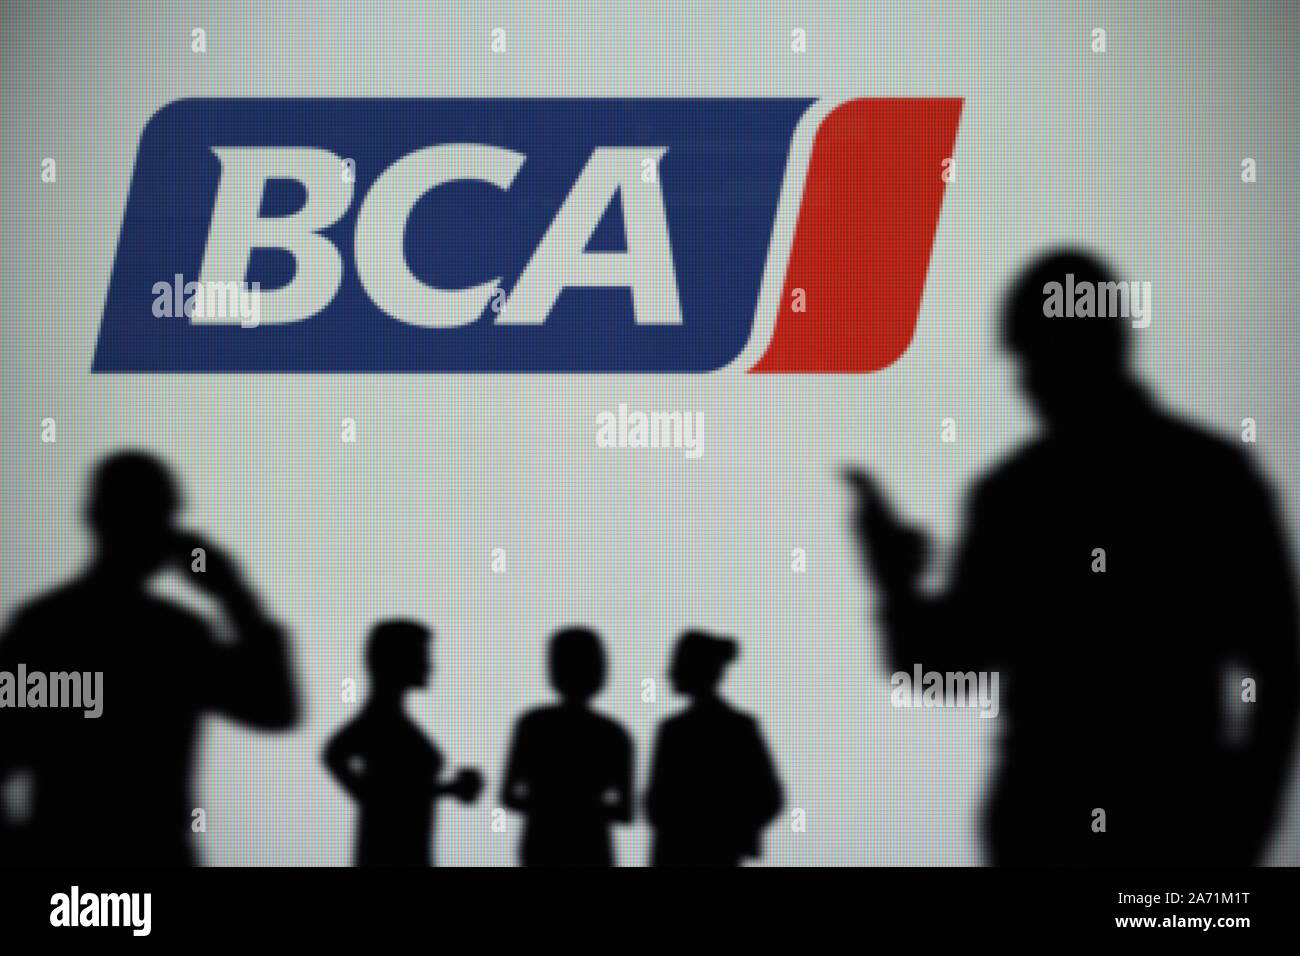 La BCA (British Alquiler de subastas) logo es visto en una pantalla LED en el fondo mientras una silueta persona utiliza un smartphone (uso Editorial solamente) Foto de stock